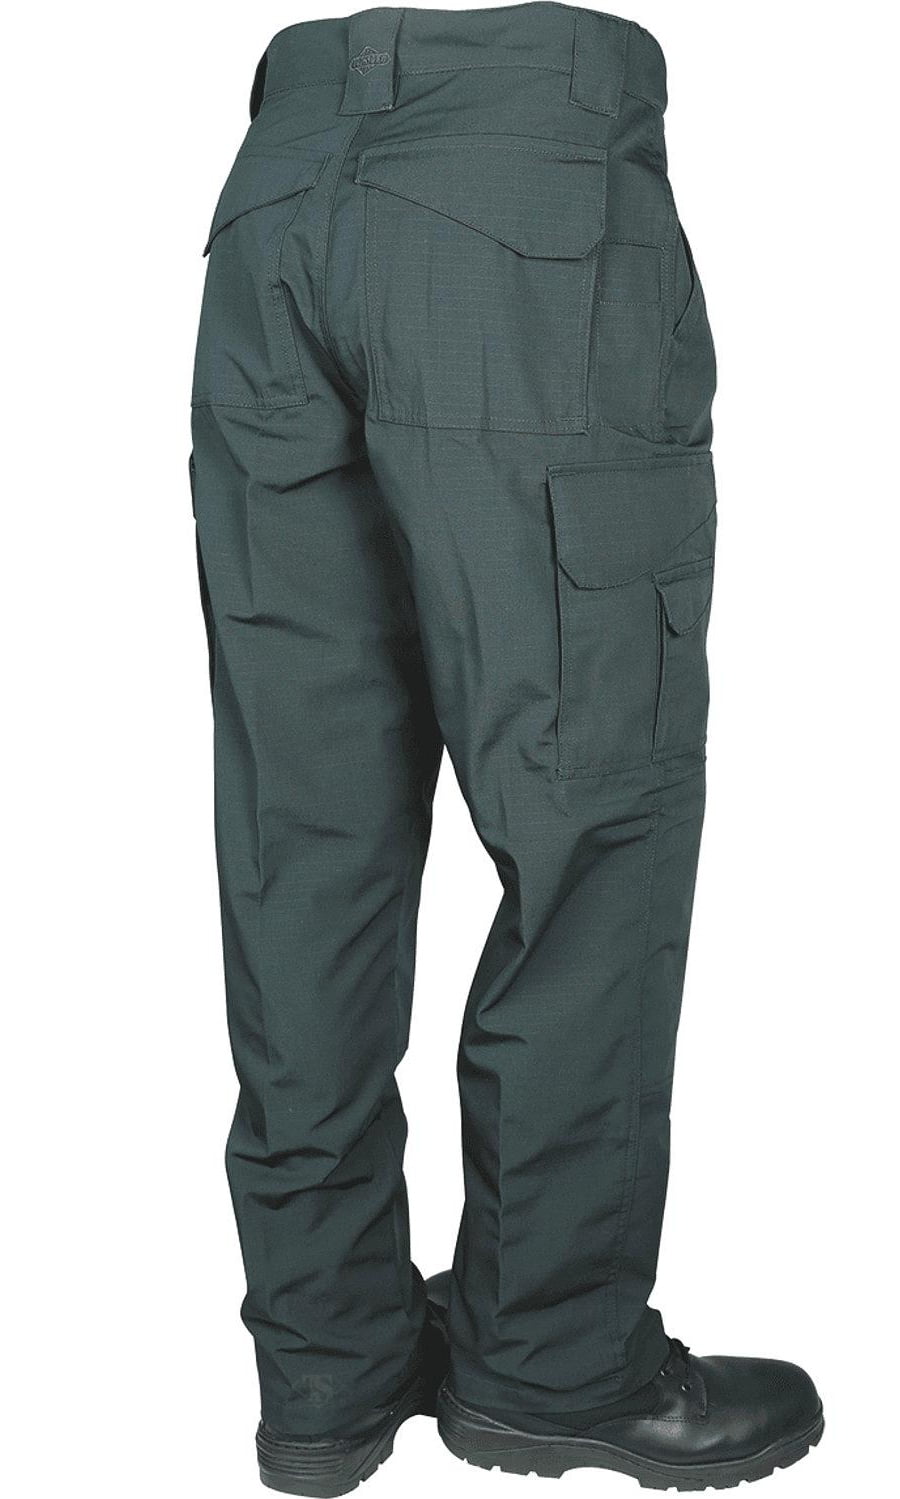 TRU-SPEC Men's 24-7 Series Original Tactical Pant, Spruce, 28W 34L ...